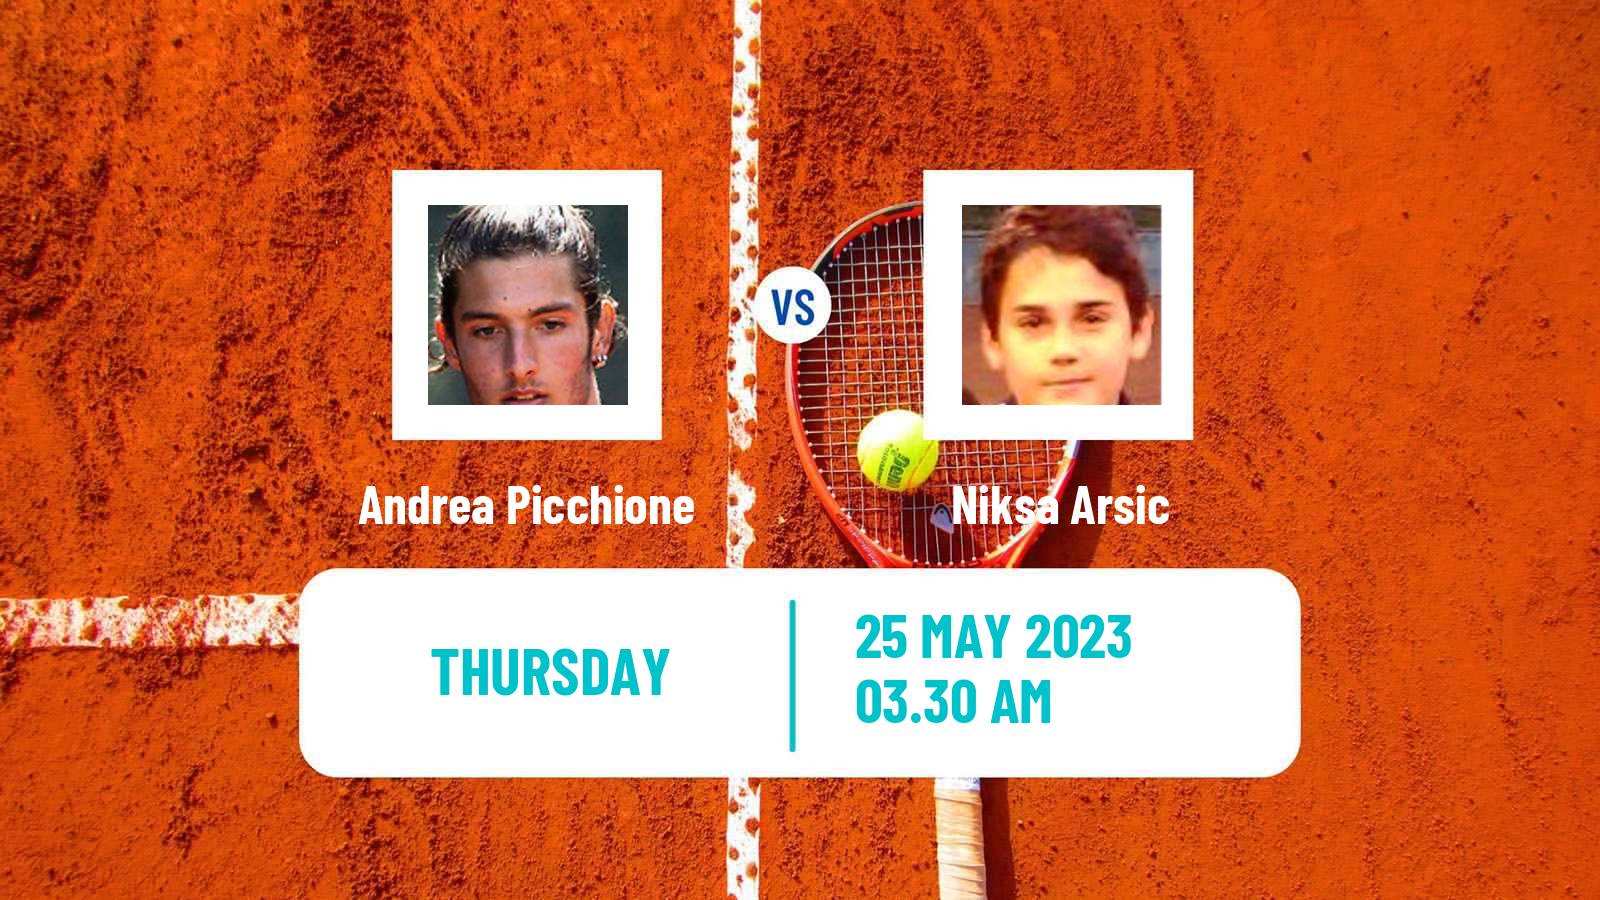 Tennis ITF M15 Kursumlijska Banja 3 Men Andrea Picchione - Niksa Arsic